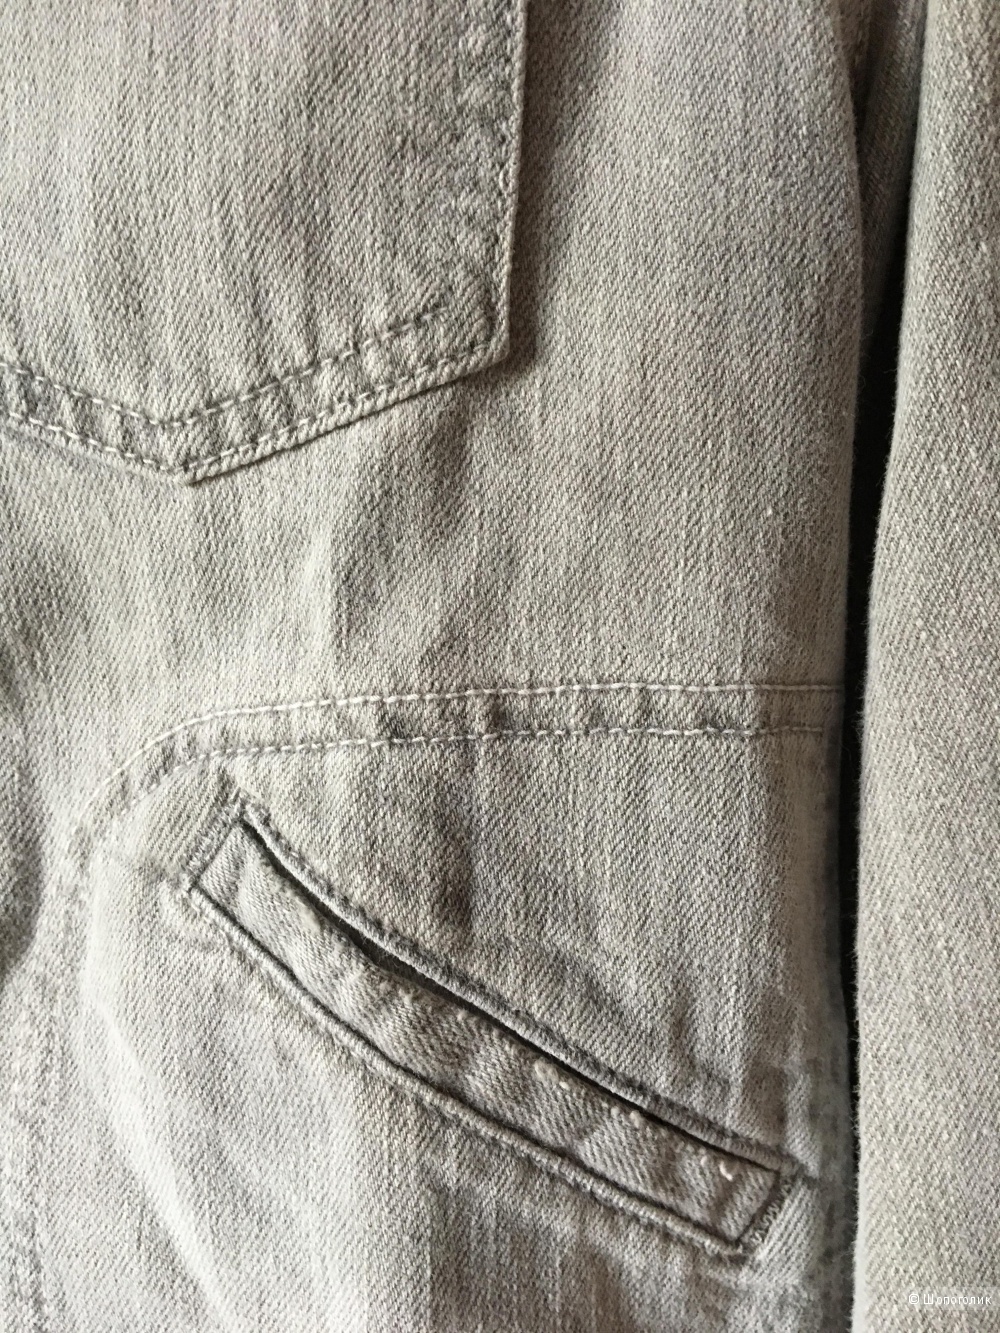 Светло-серая джинсовая куртка CURRENT/ELLIOT, размер 3, (на 46-48)